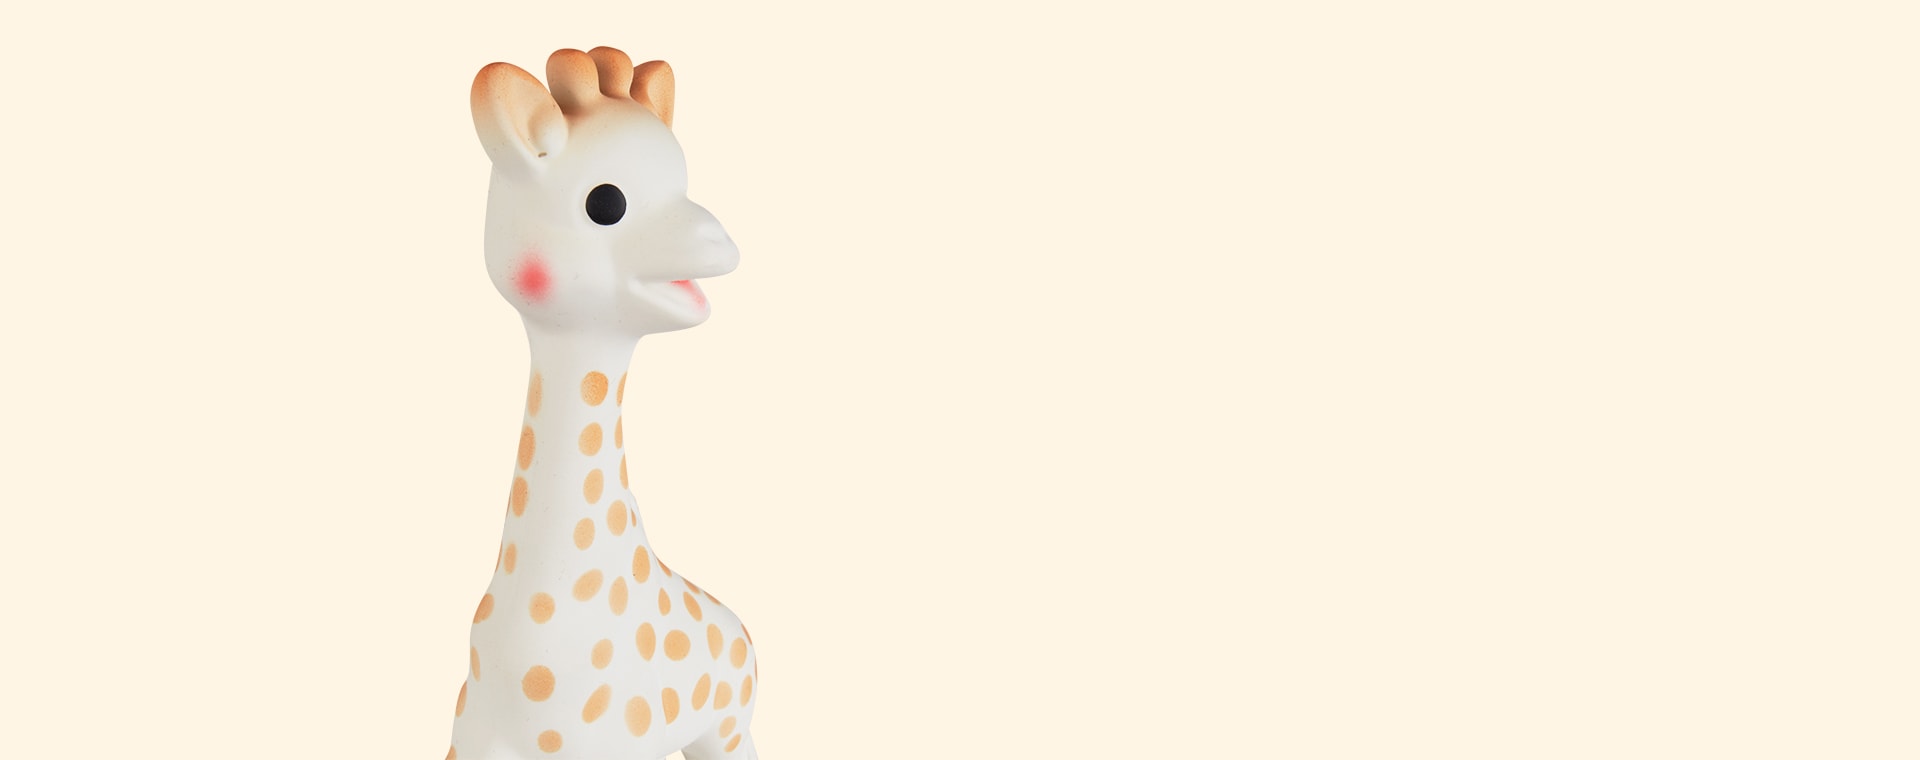 Neutral Sophie la girafe Original Sophie Toy